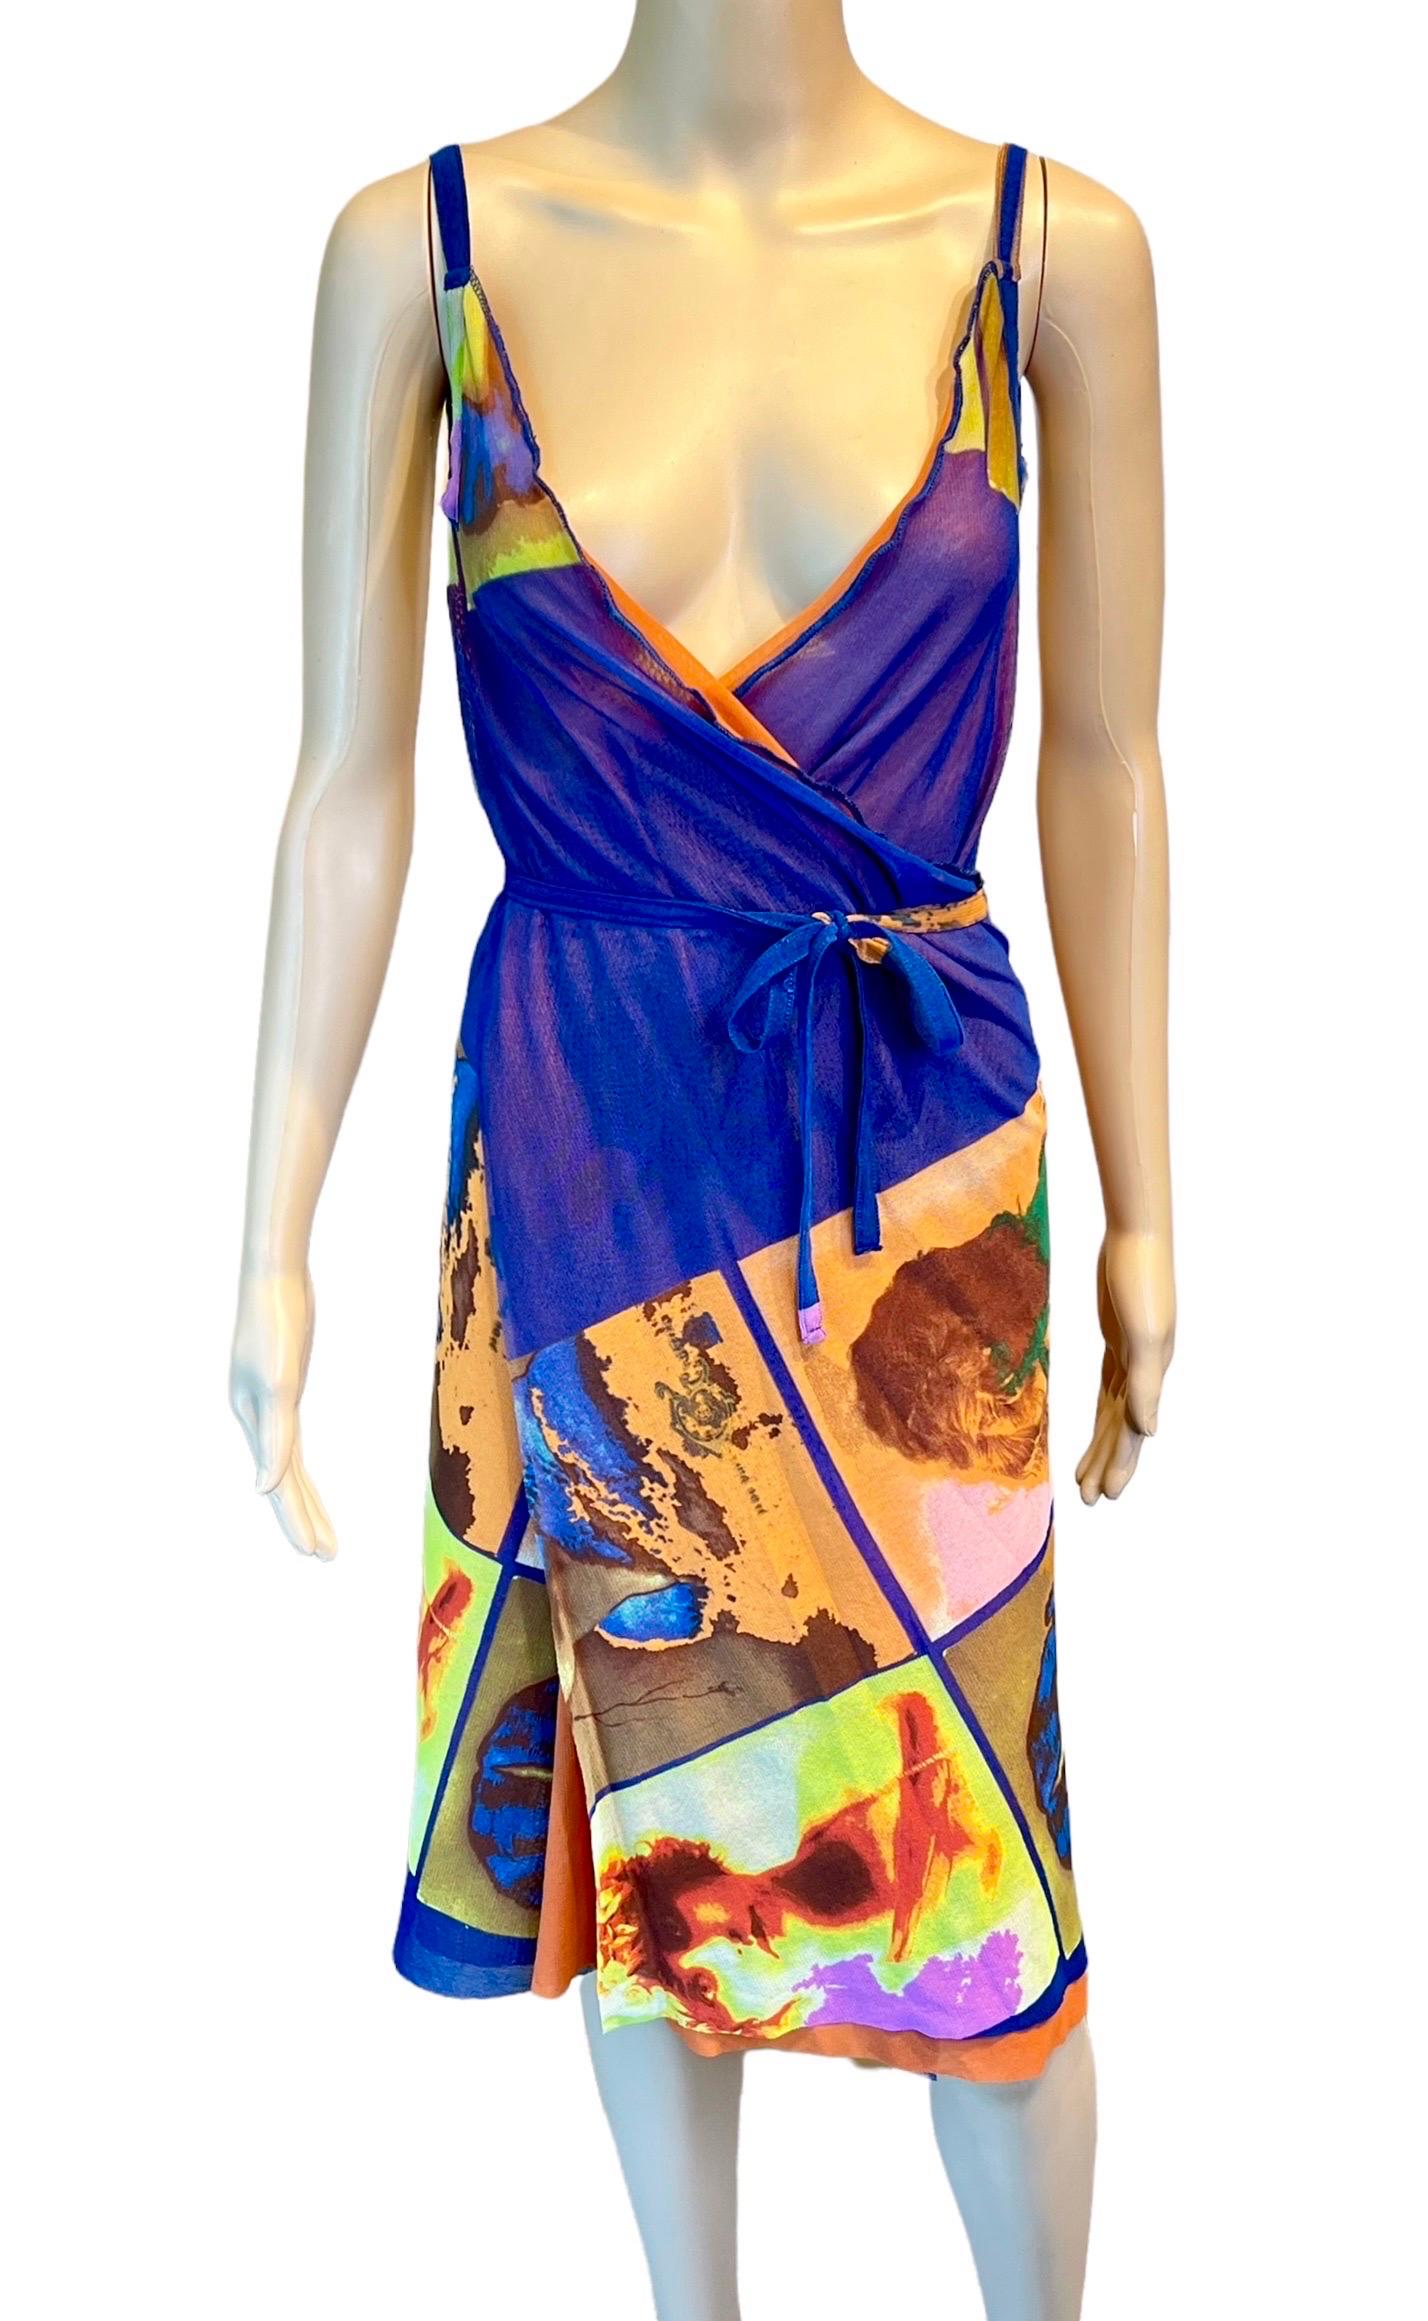 Jean Paul Gaultier Soleil S/S 2002 Vintage “Portraits” Mesh Wrap Dress  For Sale 1